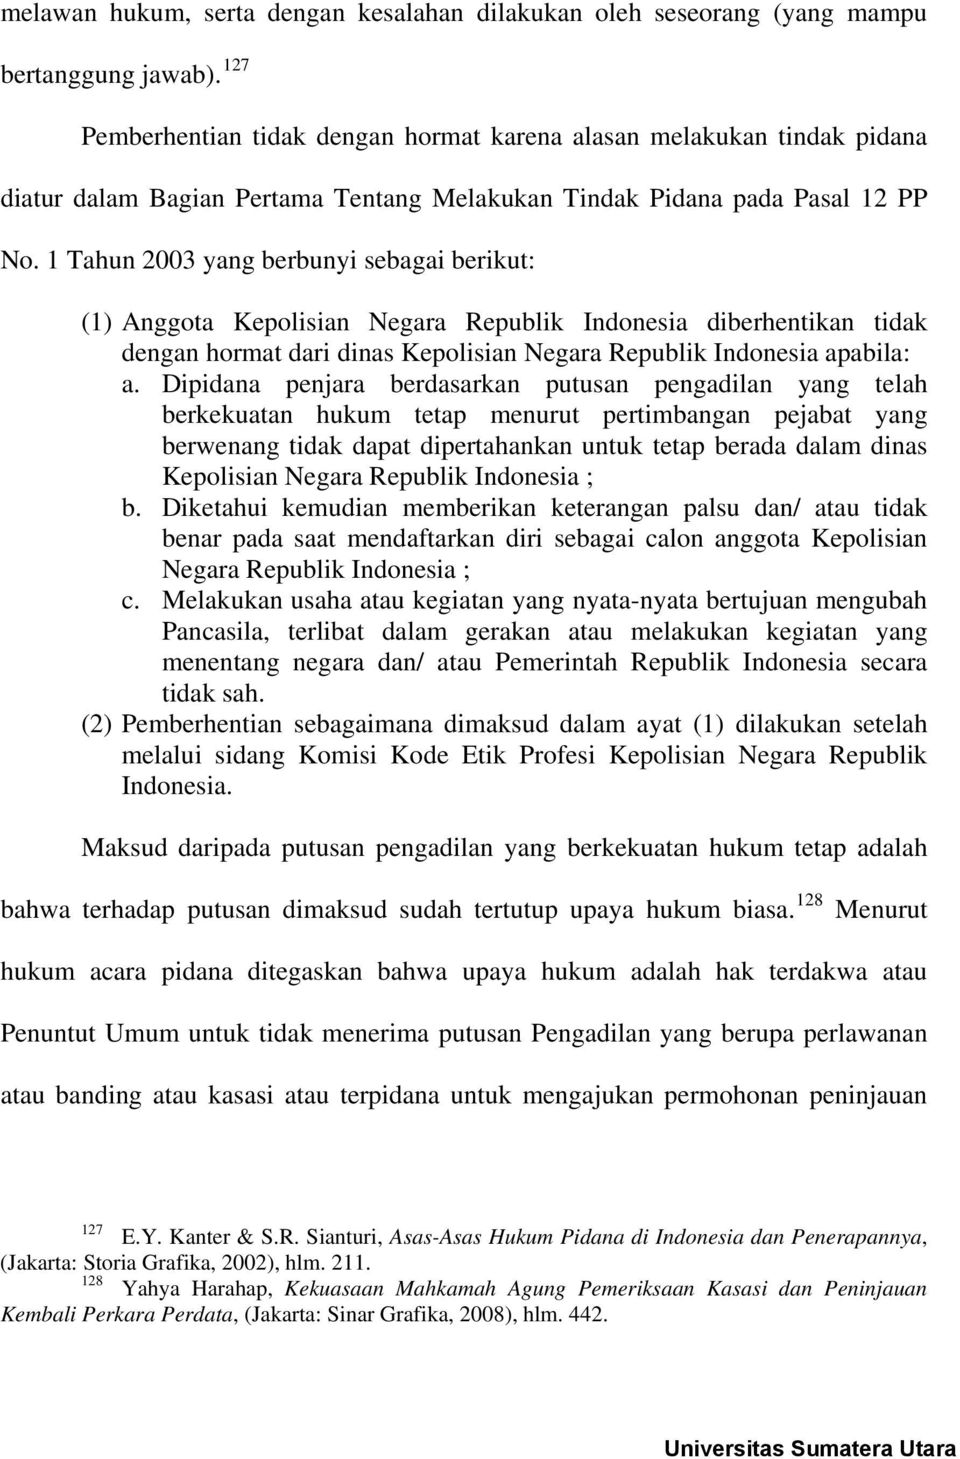 1 Tahun 2003 yang berbunyi sebagai berikut: (1) Anggota Kepolisian Negara Republik Indonesia diberhentikan tidak dengan hormat dari dinas Kepolisian Negara Republik Indonesia apabila: a.